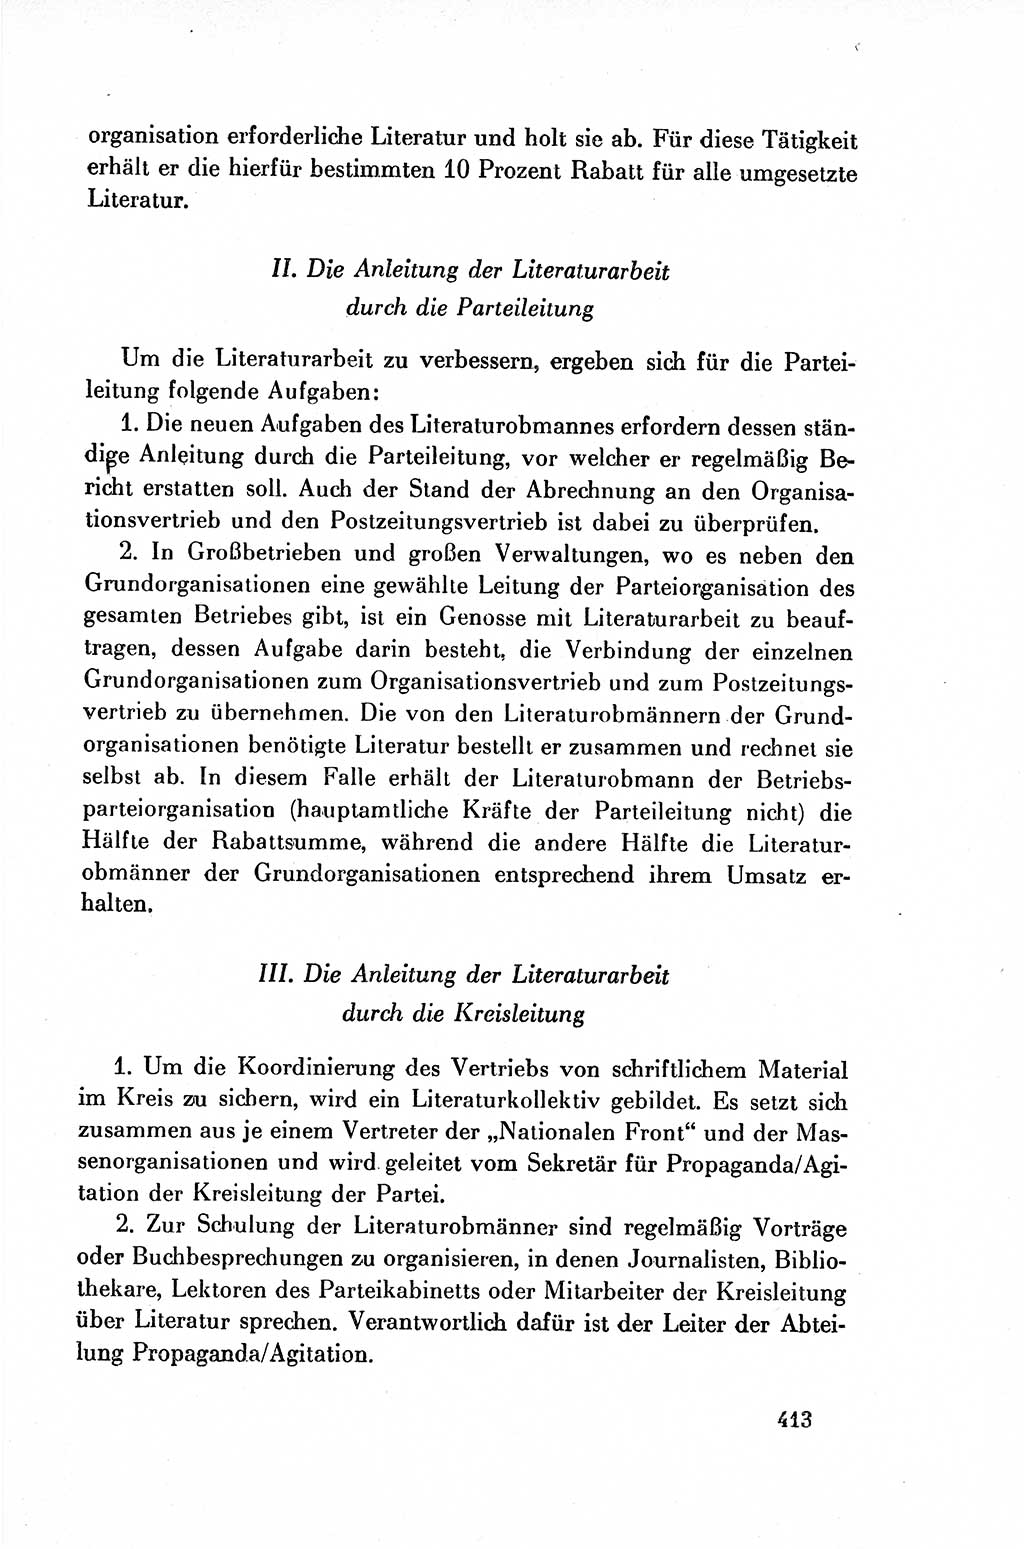 Dokumente der Sozialistischen Einheitspartei Deutschlands (SED) [Deutsche Demokratische Republik (DDR)] 1954-1955, Seite 413 (Dok. SED DDR 1954-1955, S. 413)